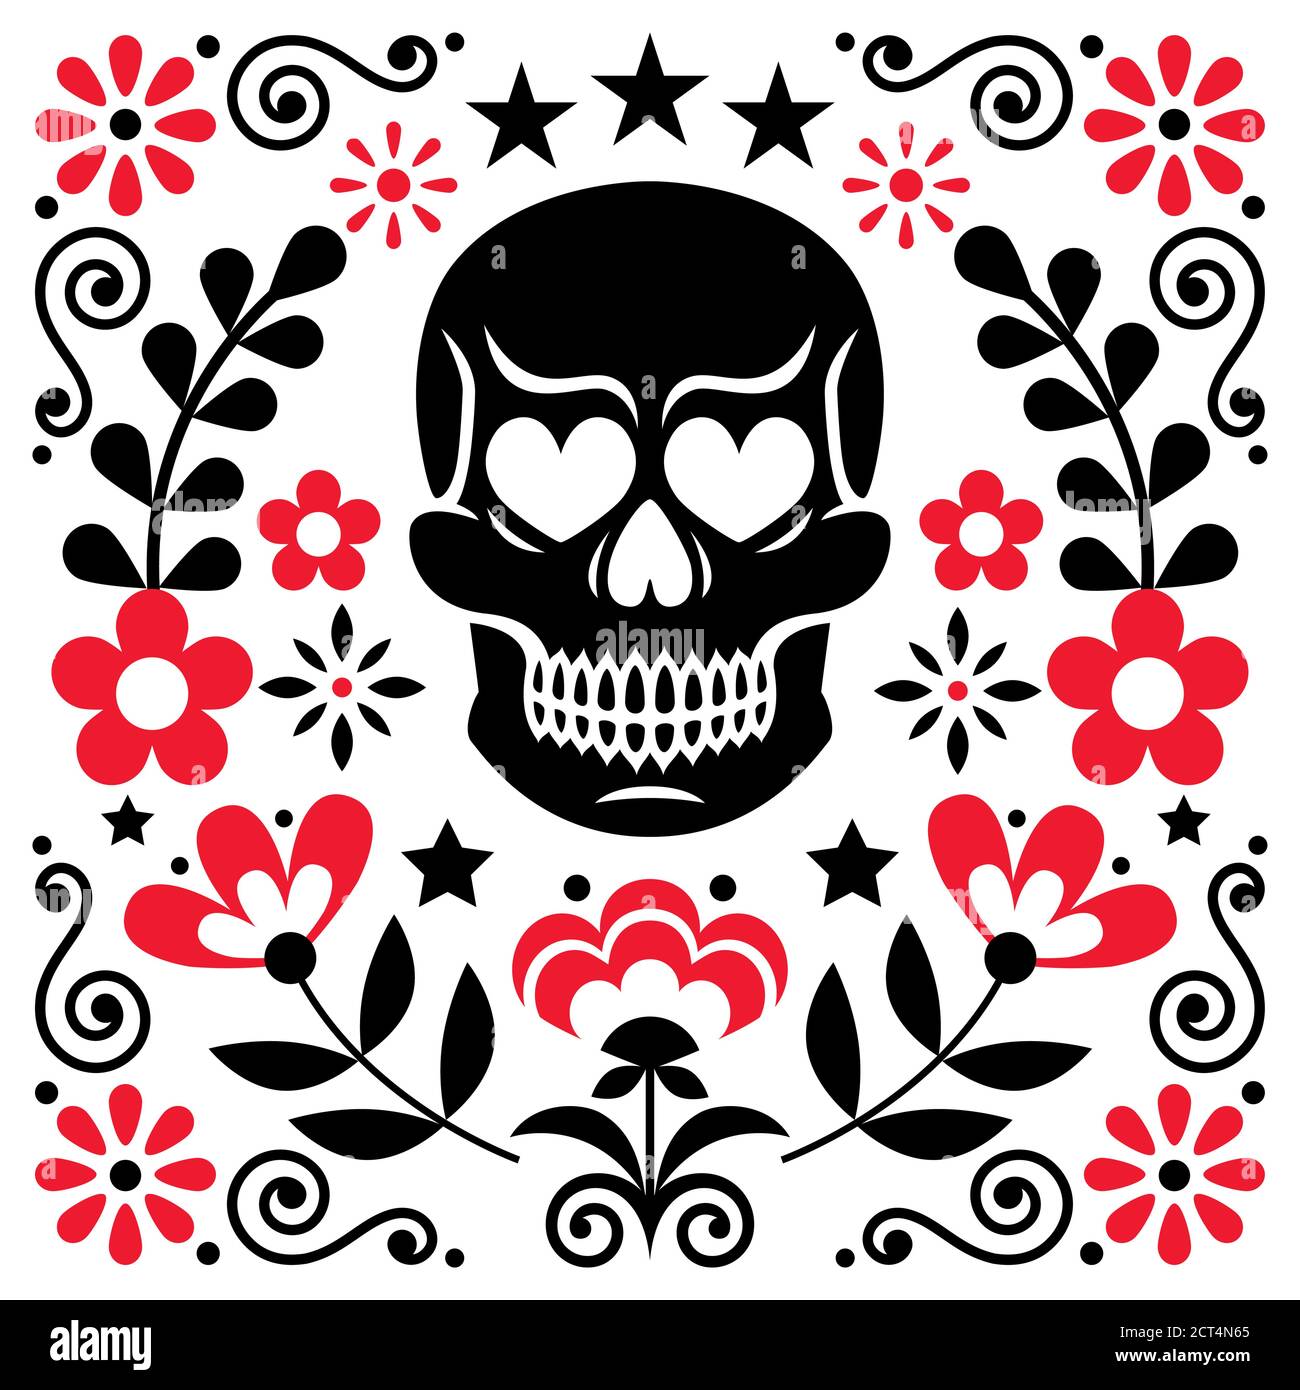 Motif mexicain de fleurs et de têtes de mort, Halloween et décoration florale Day of the Dead - style folklorique Illustration de Vecteur